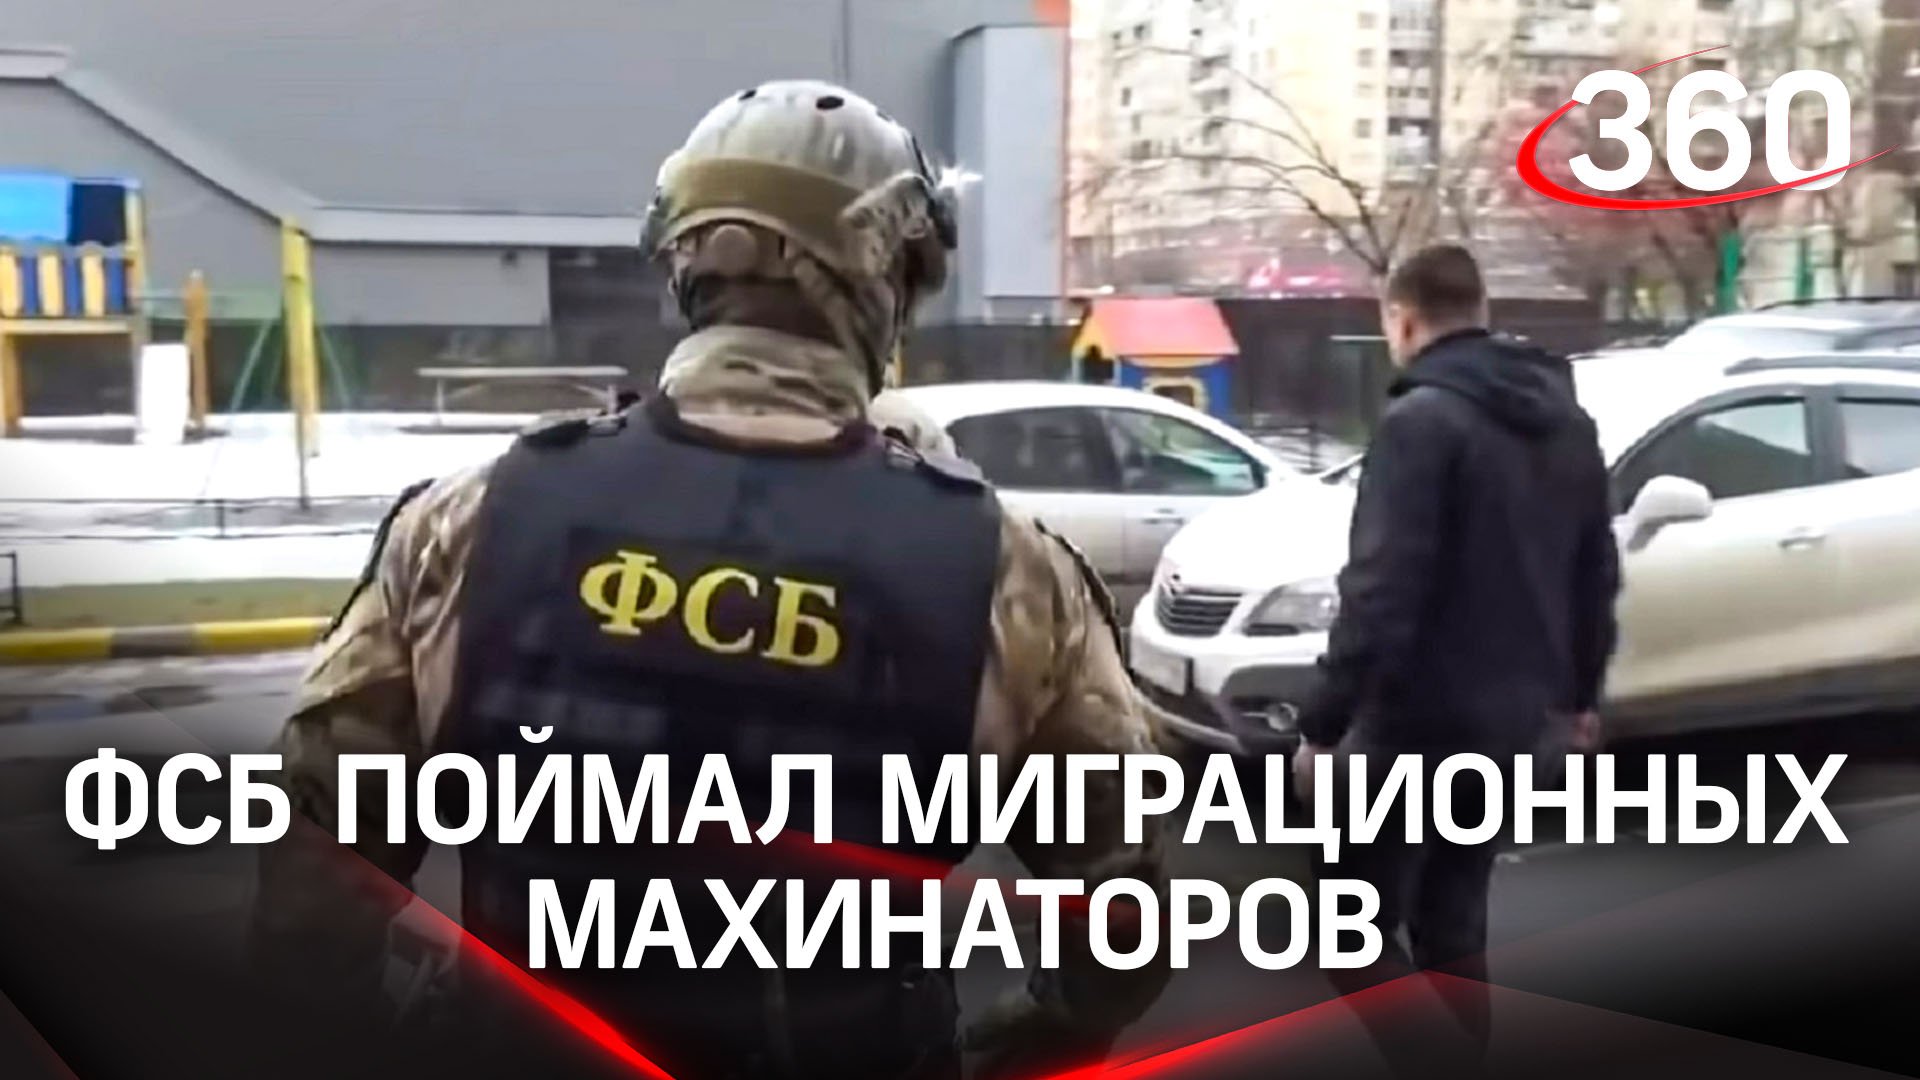 Сотрудники ФСБ «накрыли» миграционных махинаторов в Подмосковье, кадры задержания